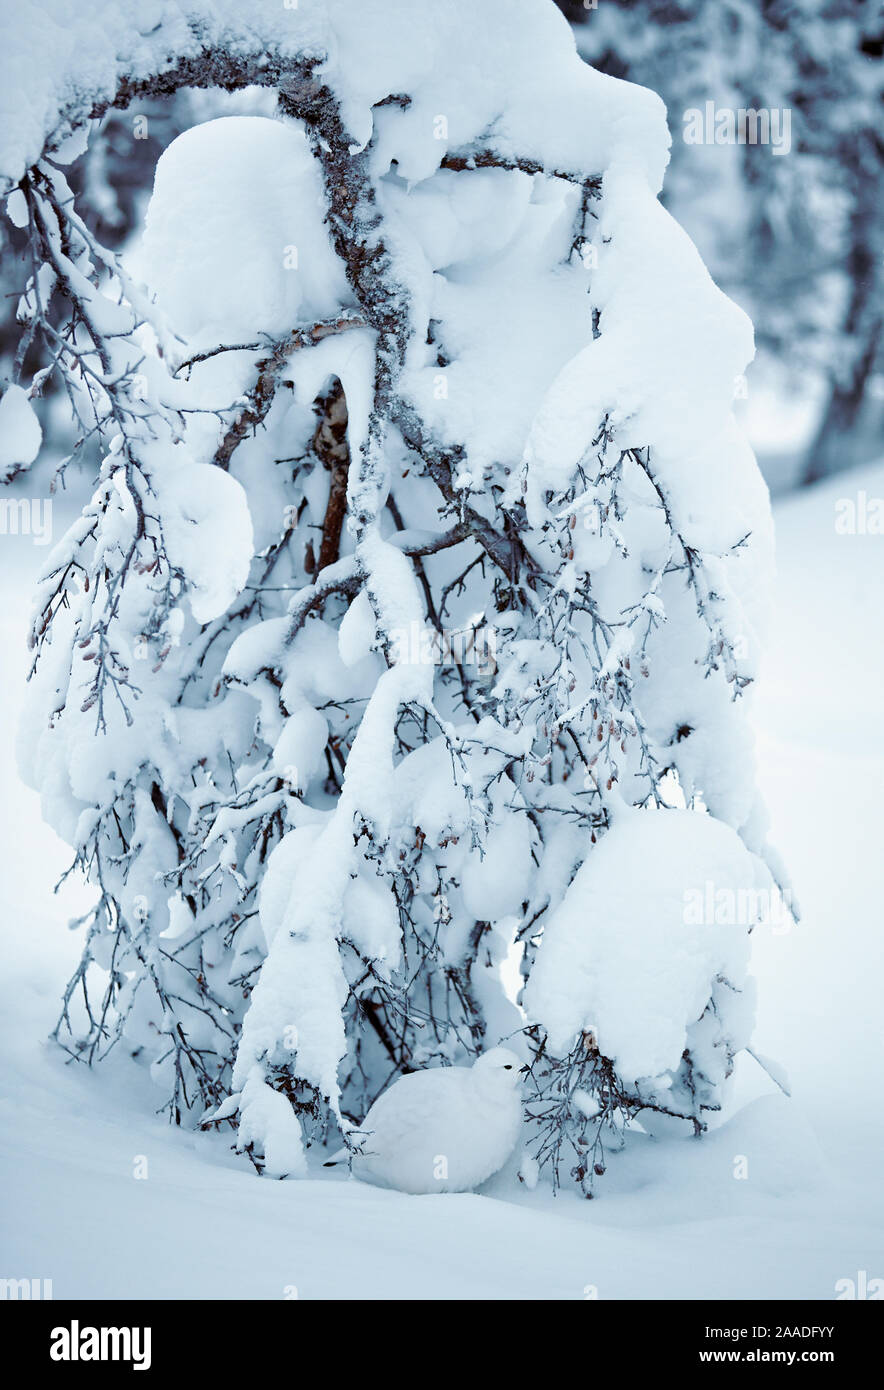 Lagopède des saules (Lagopus lagopus) mise à l'abri sous la neige laden arbre, Kiilopa Inari Finlande Janvier Banque D'Images